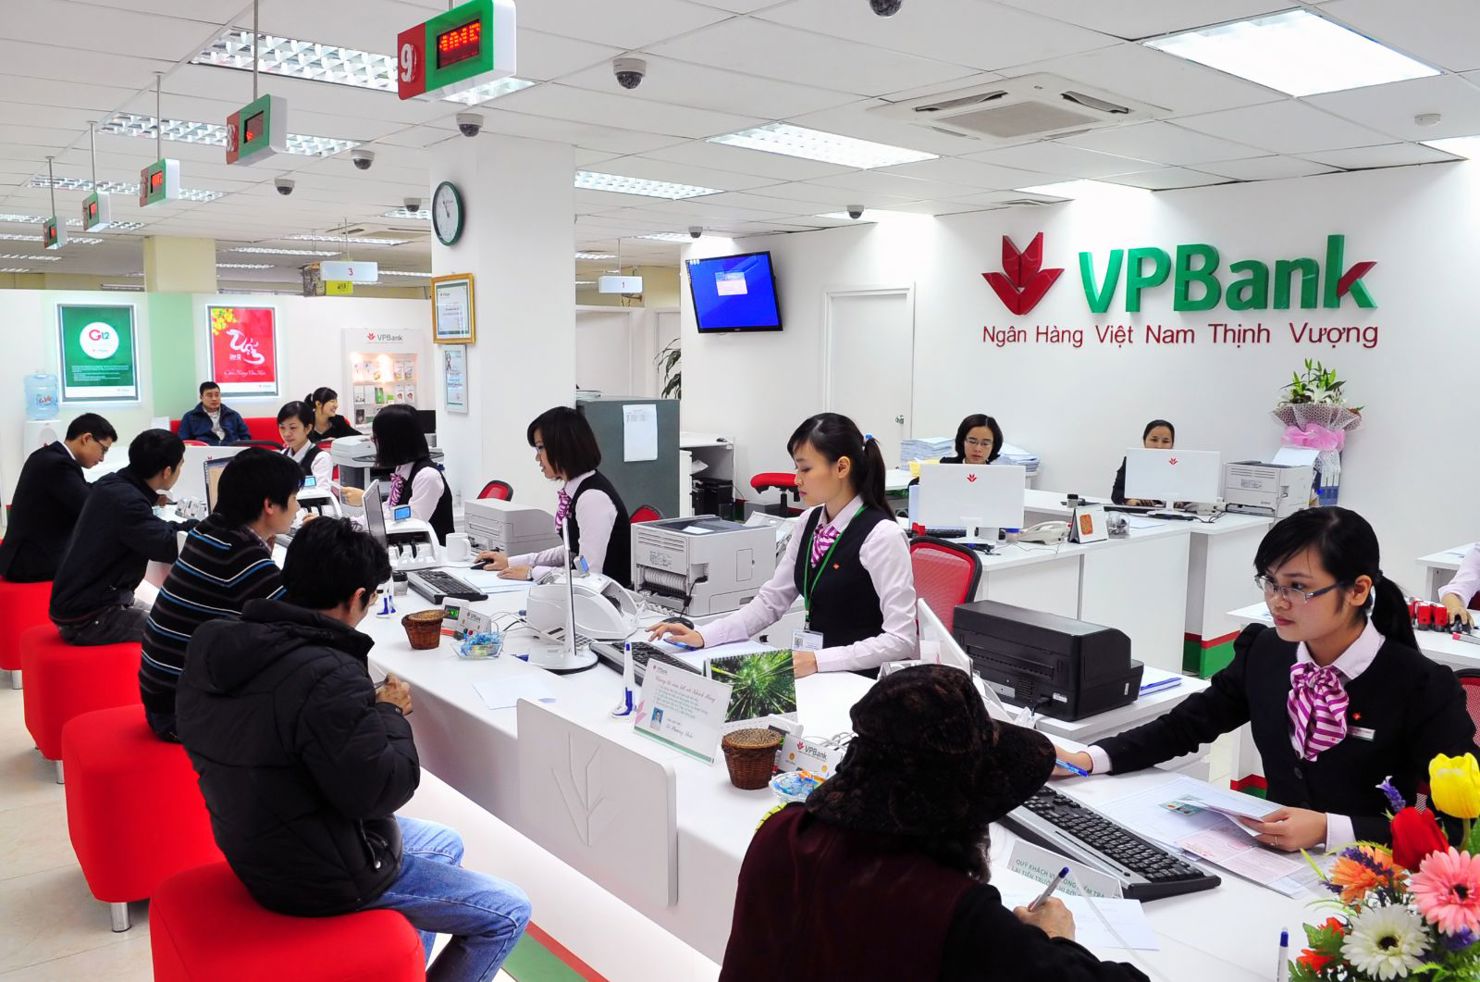 Ngân hàng Nhà nước đã chấp thuận việc tăng vốn điều lệ của Ngân hàng TMCP Phương Đông, Ngân hàng TMCP Việt Nam Thịnh Vượng và Ngân hàng TMCP Bắc Á.